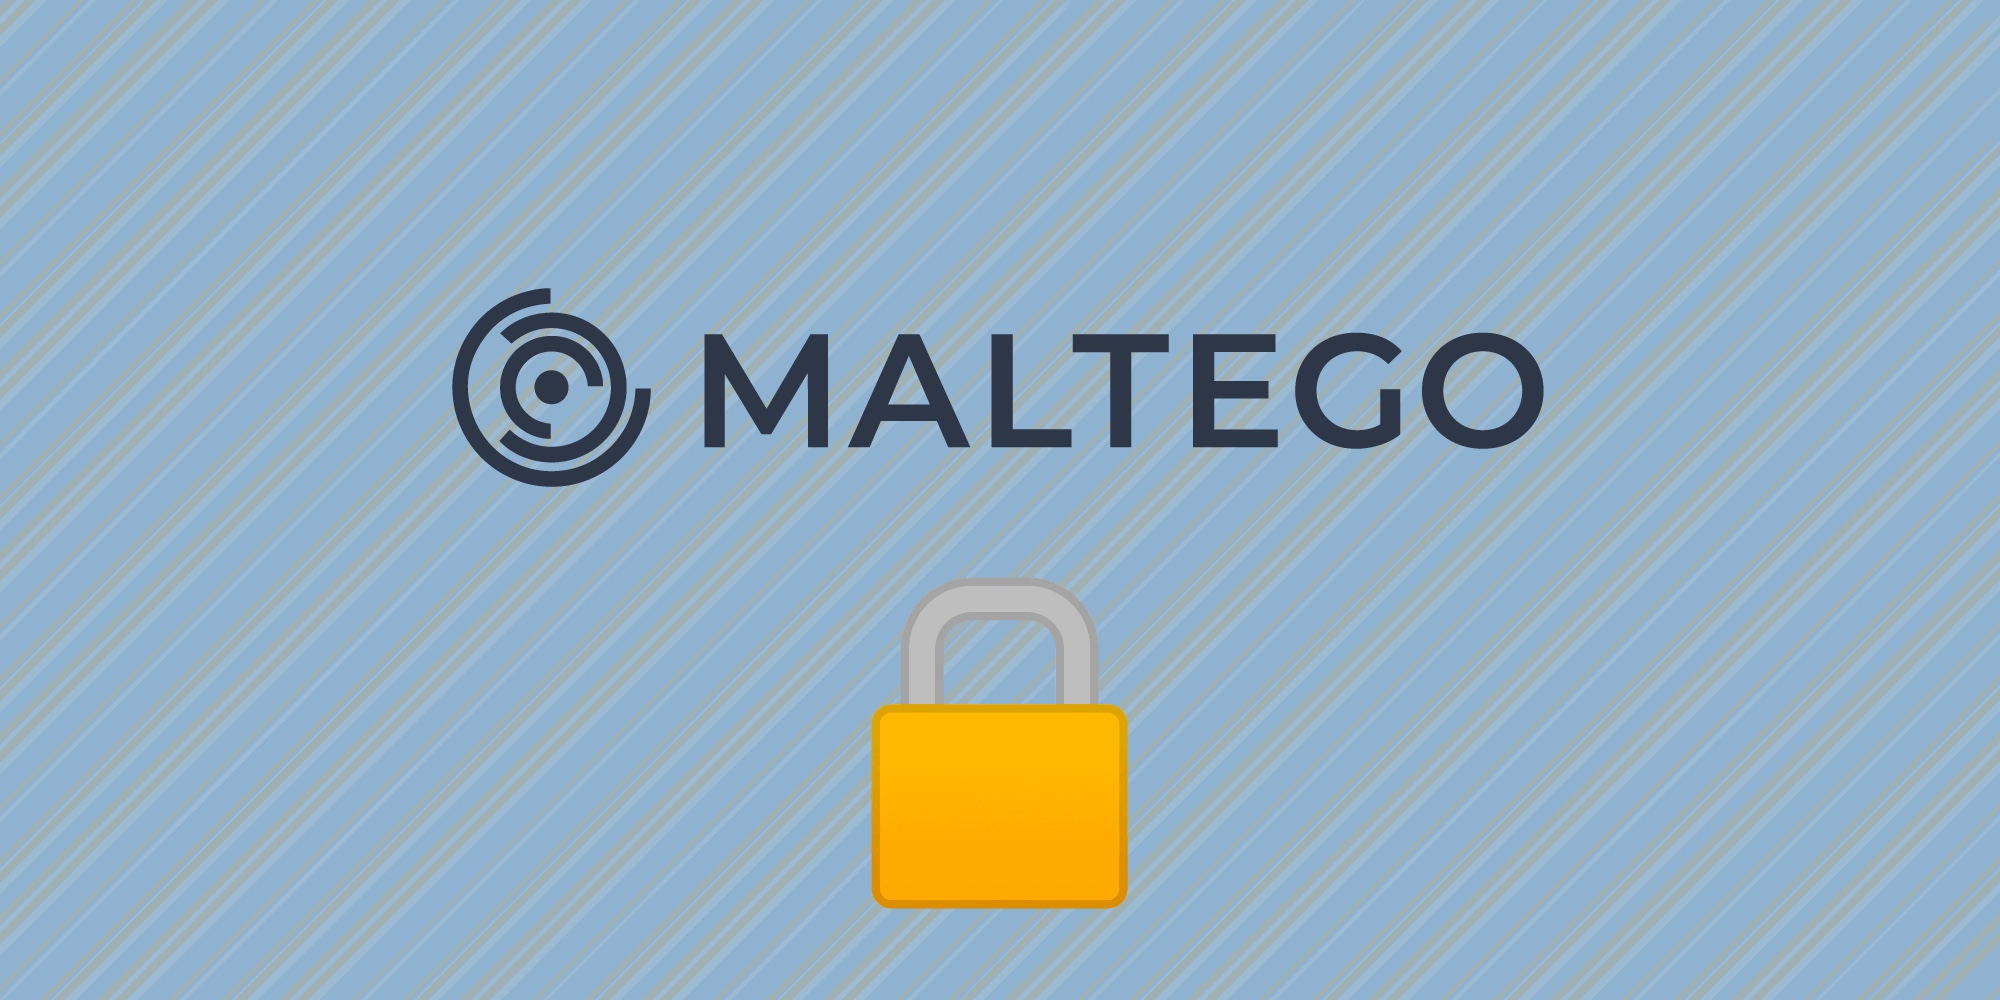 🕵 Я узнаю тебя из тысячи: поиск киберпреступников с помощью Maltego. Опыт REG.RU